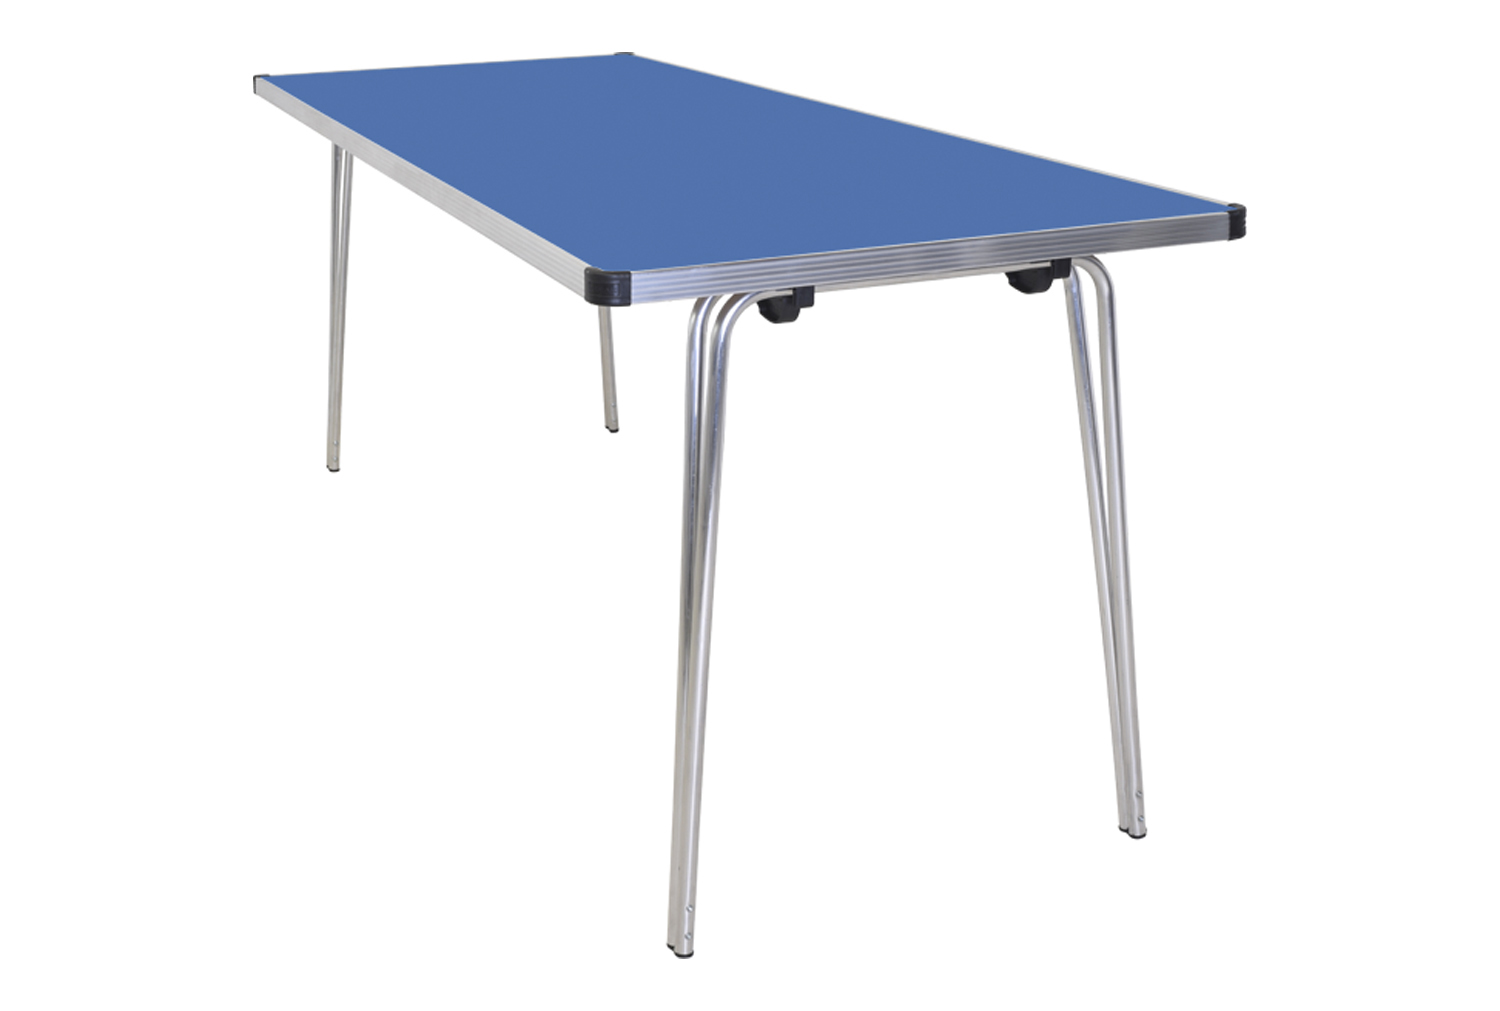 Gopak Contour Folding Table, 122wx76d (cm), Blue